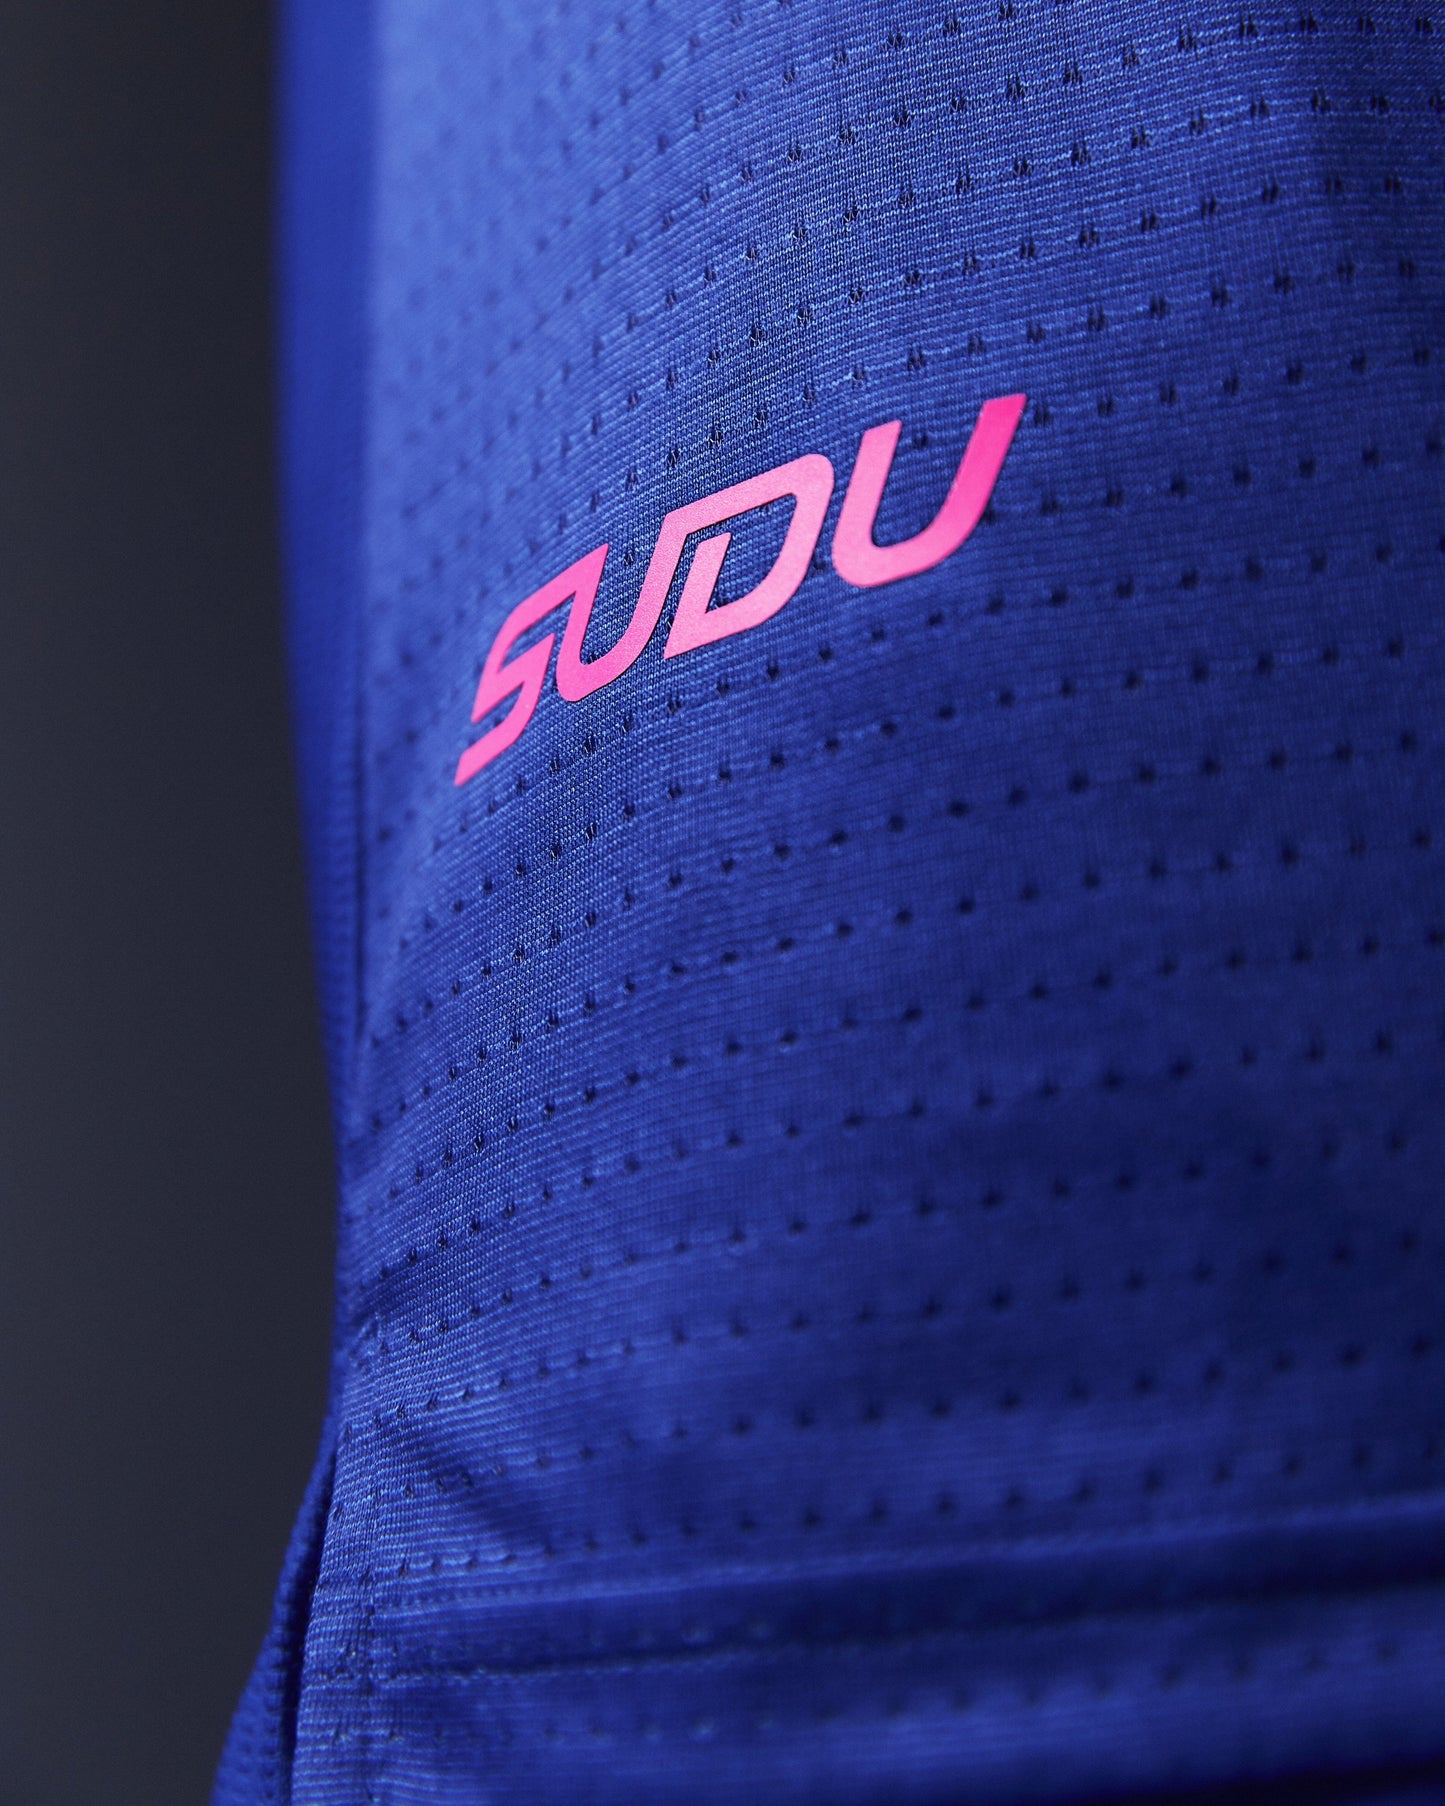 SUDU SRT SS 01 Run Short Sleeve T-Shirt - Belleweather Blue / Carmine Rose Short Sleeve T-Shirt